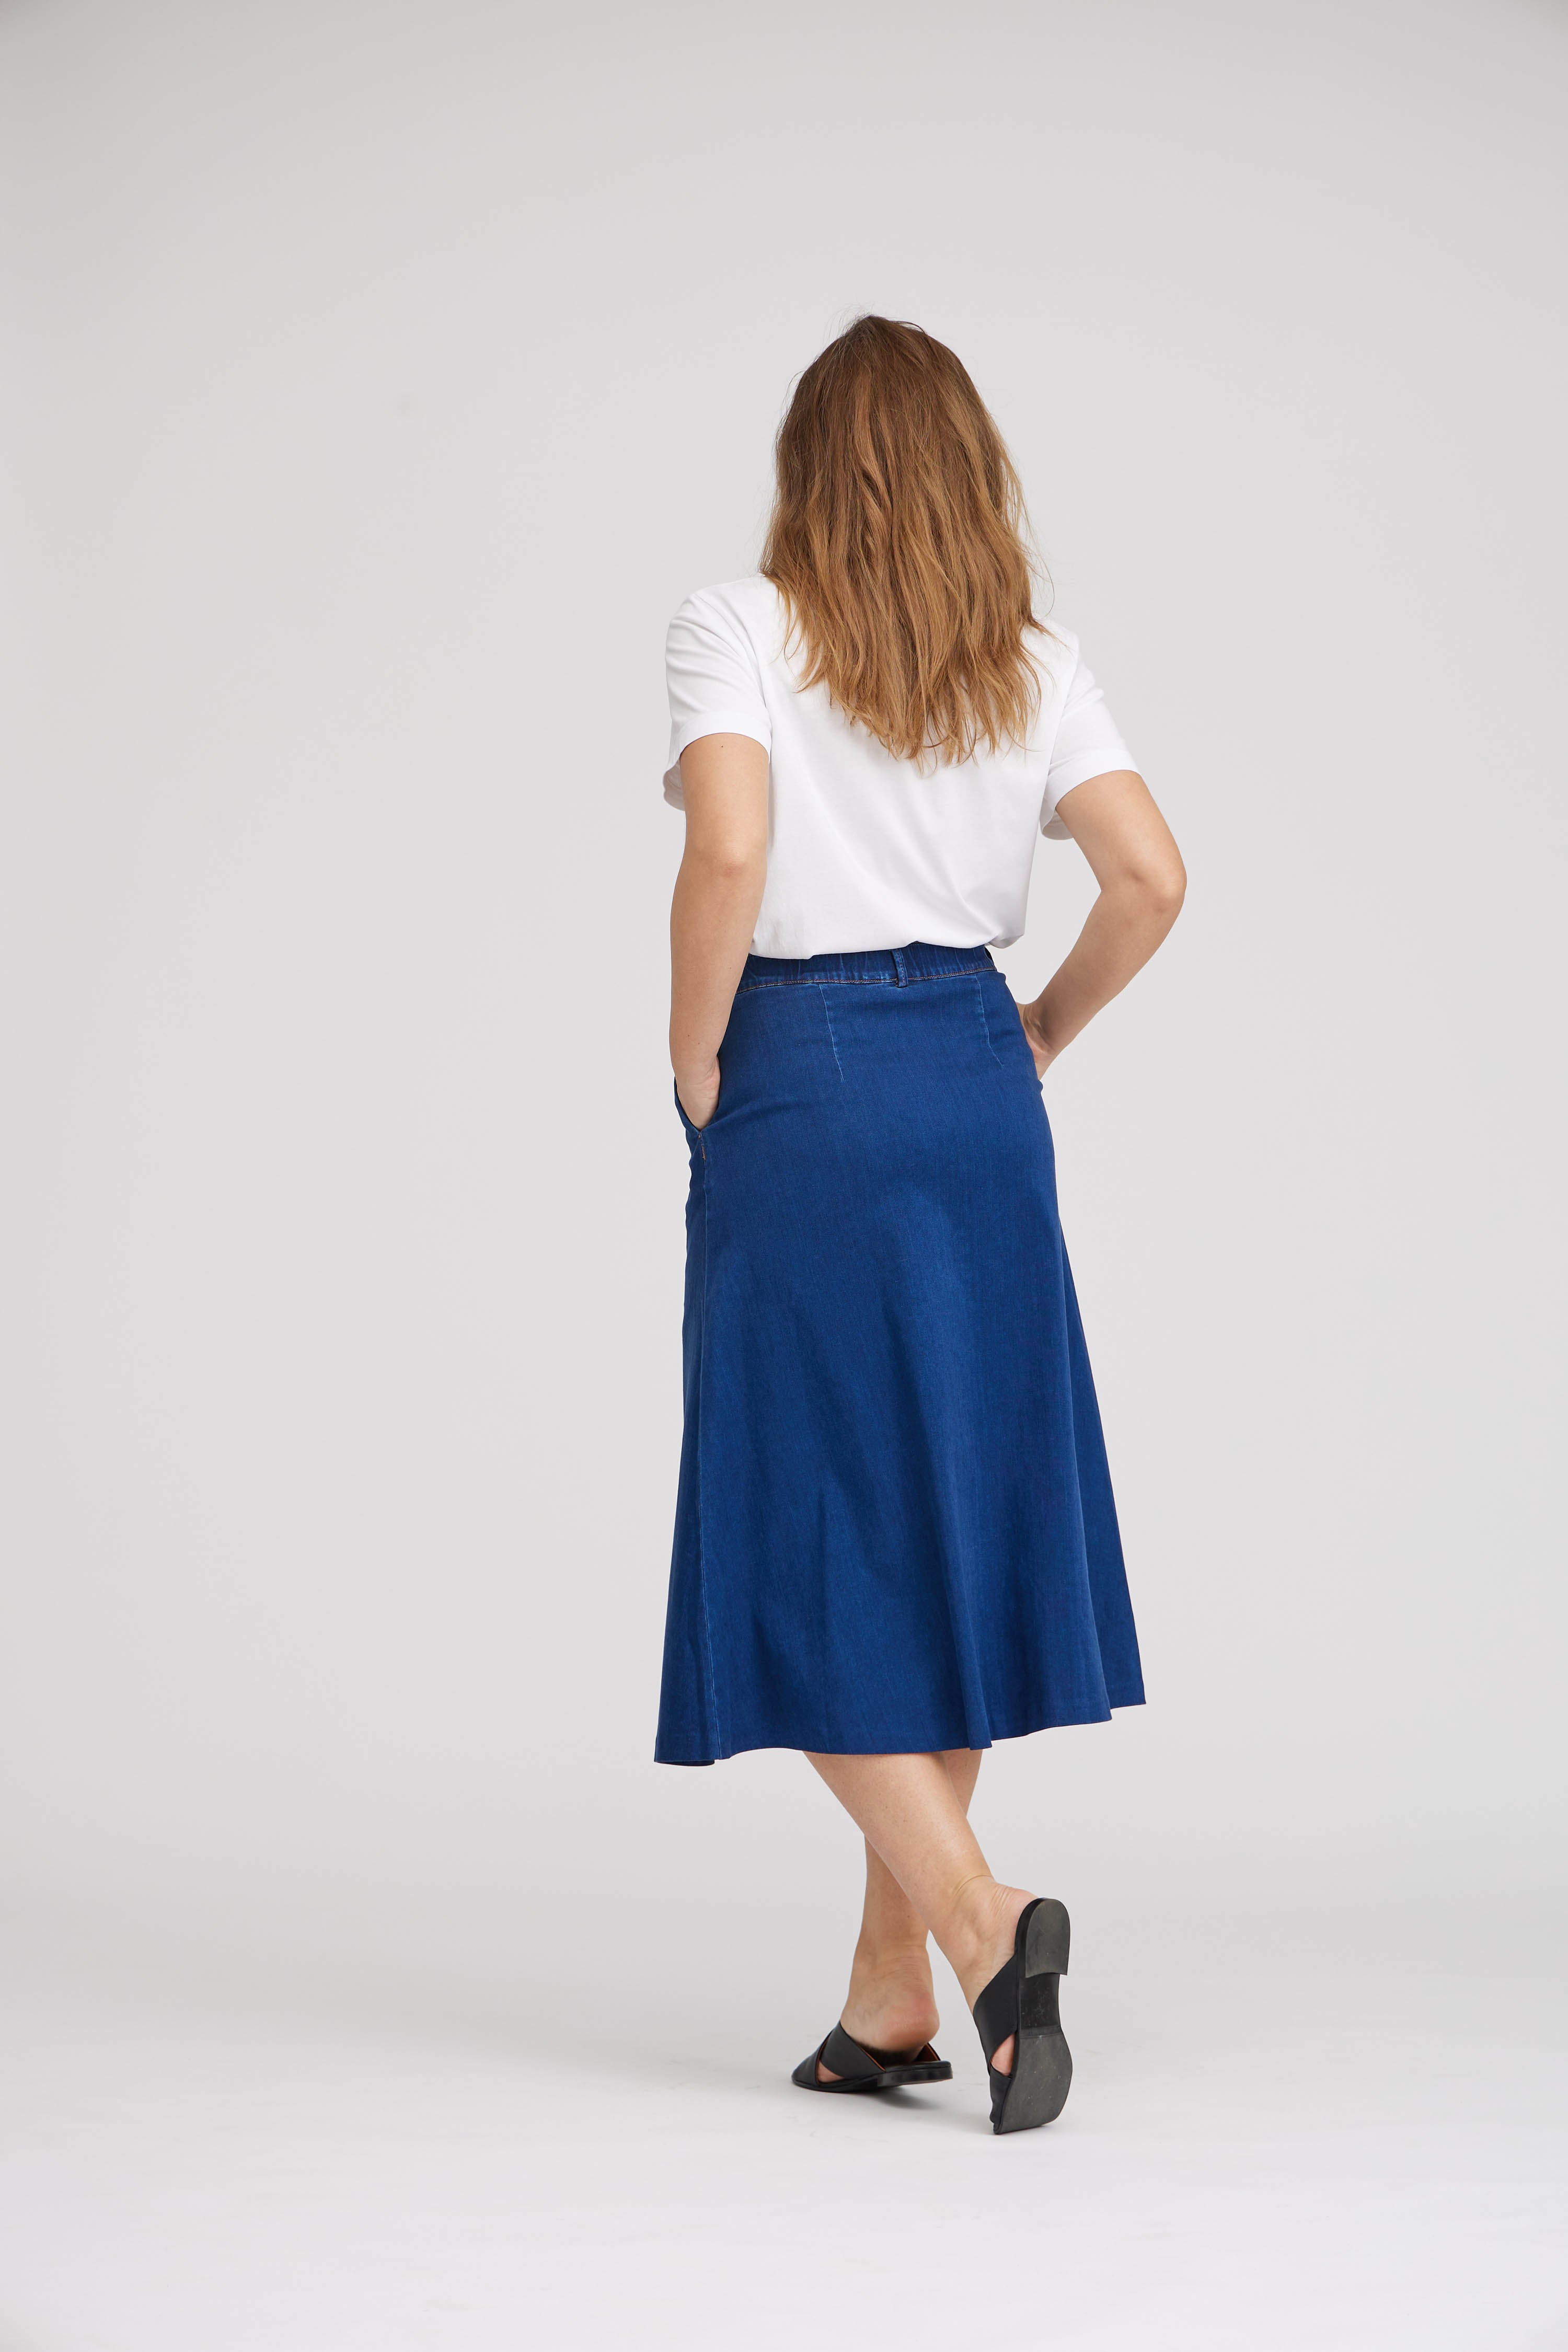 Veluddannet tendens samvittighed Bliv klar til foråret: 3 måder at style dit outfit med nederdel